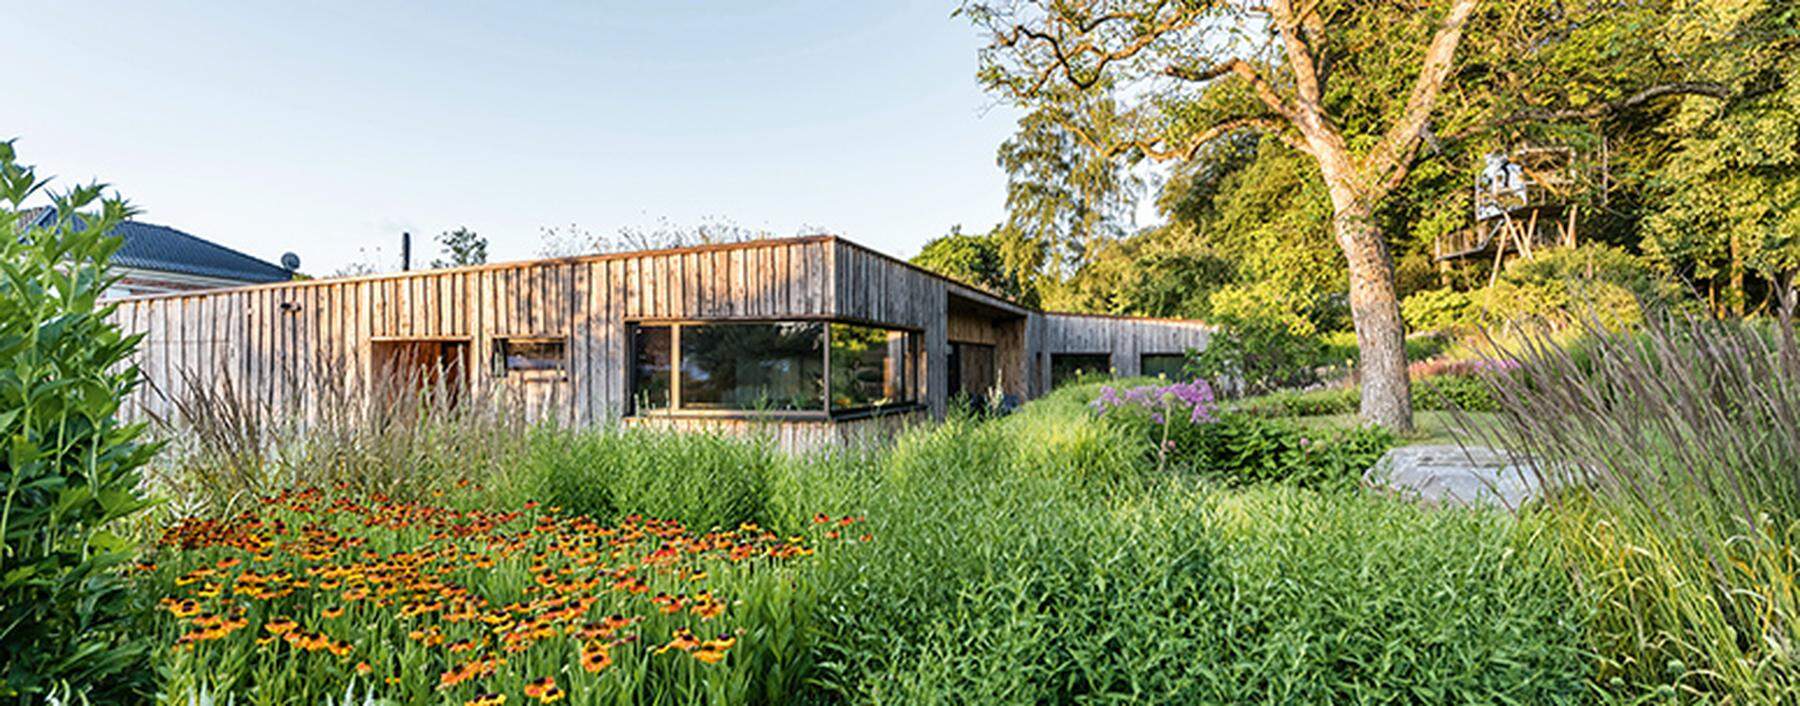 Holzhaus in Hannover eingebettet in eine Stauden- und Gräserbepflanzung.